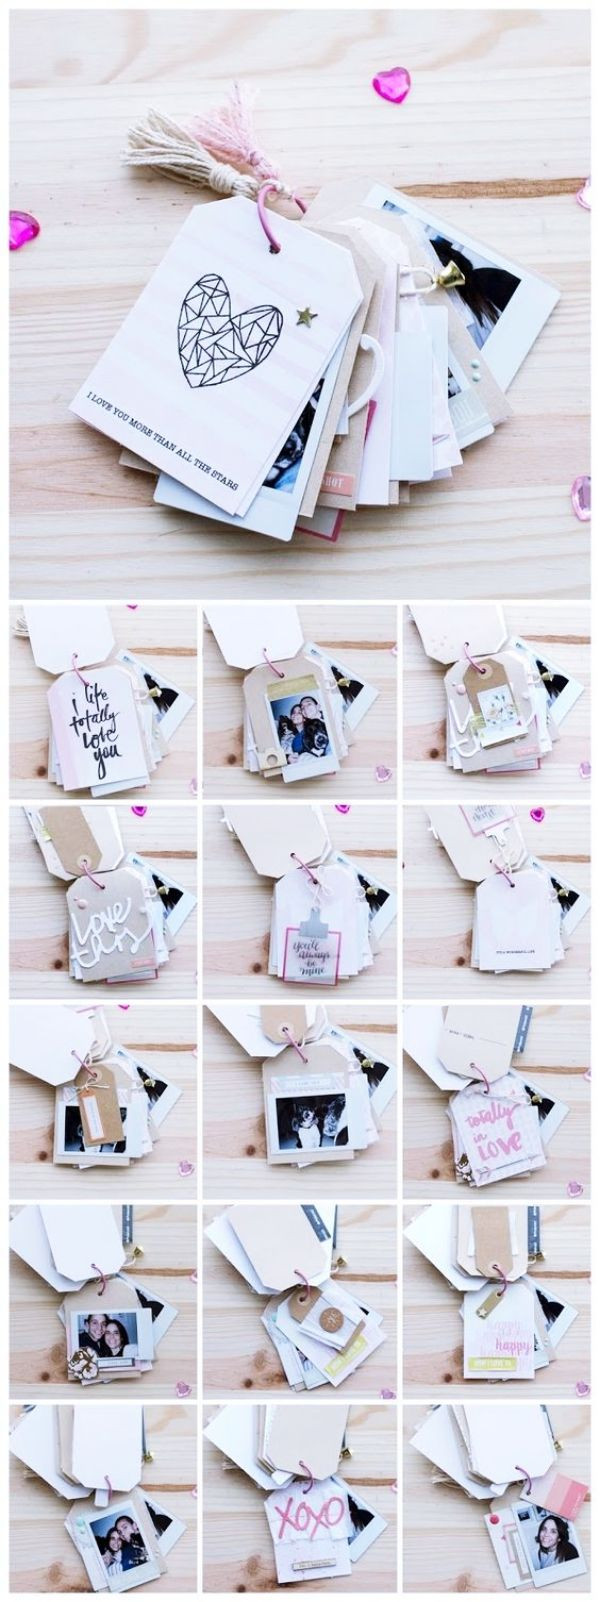 Valentine'S Day Gift Ideas For Boyfriend Homemade
 35 Homemade Valentine’s Day Gift Ideas for Him